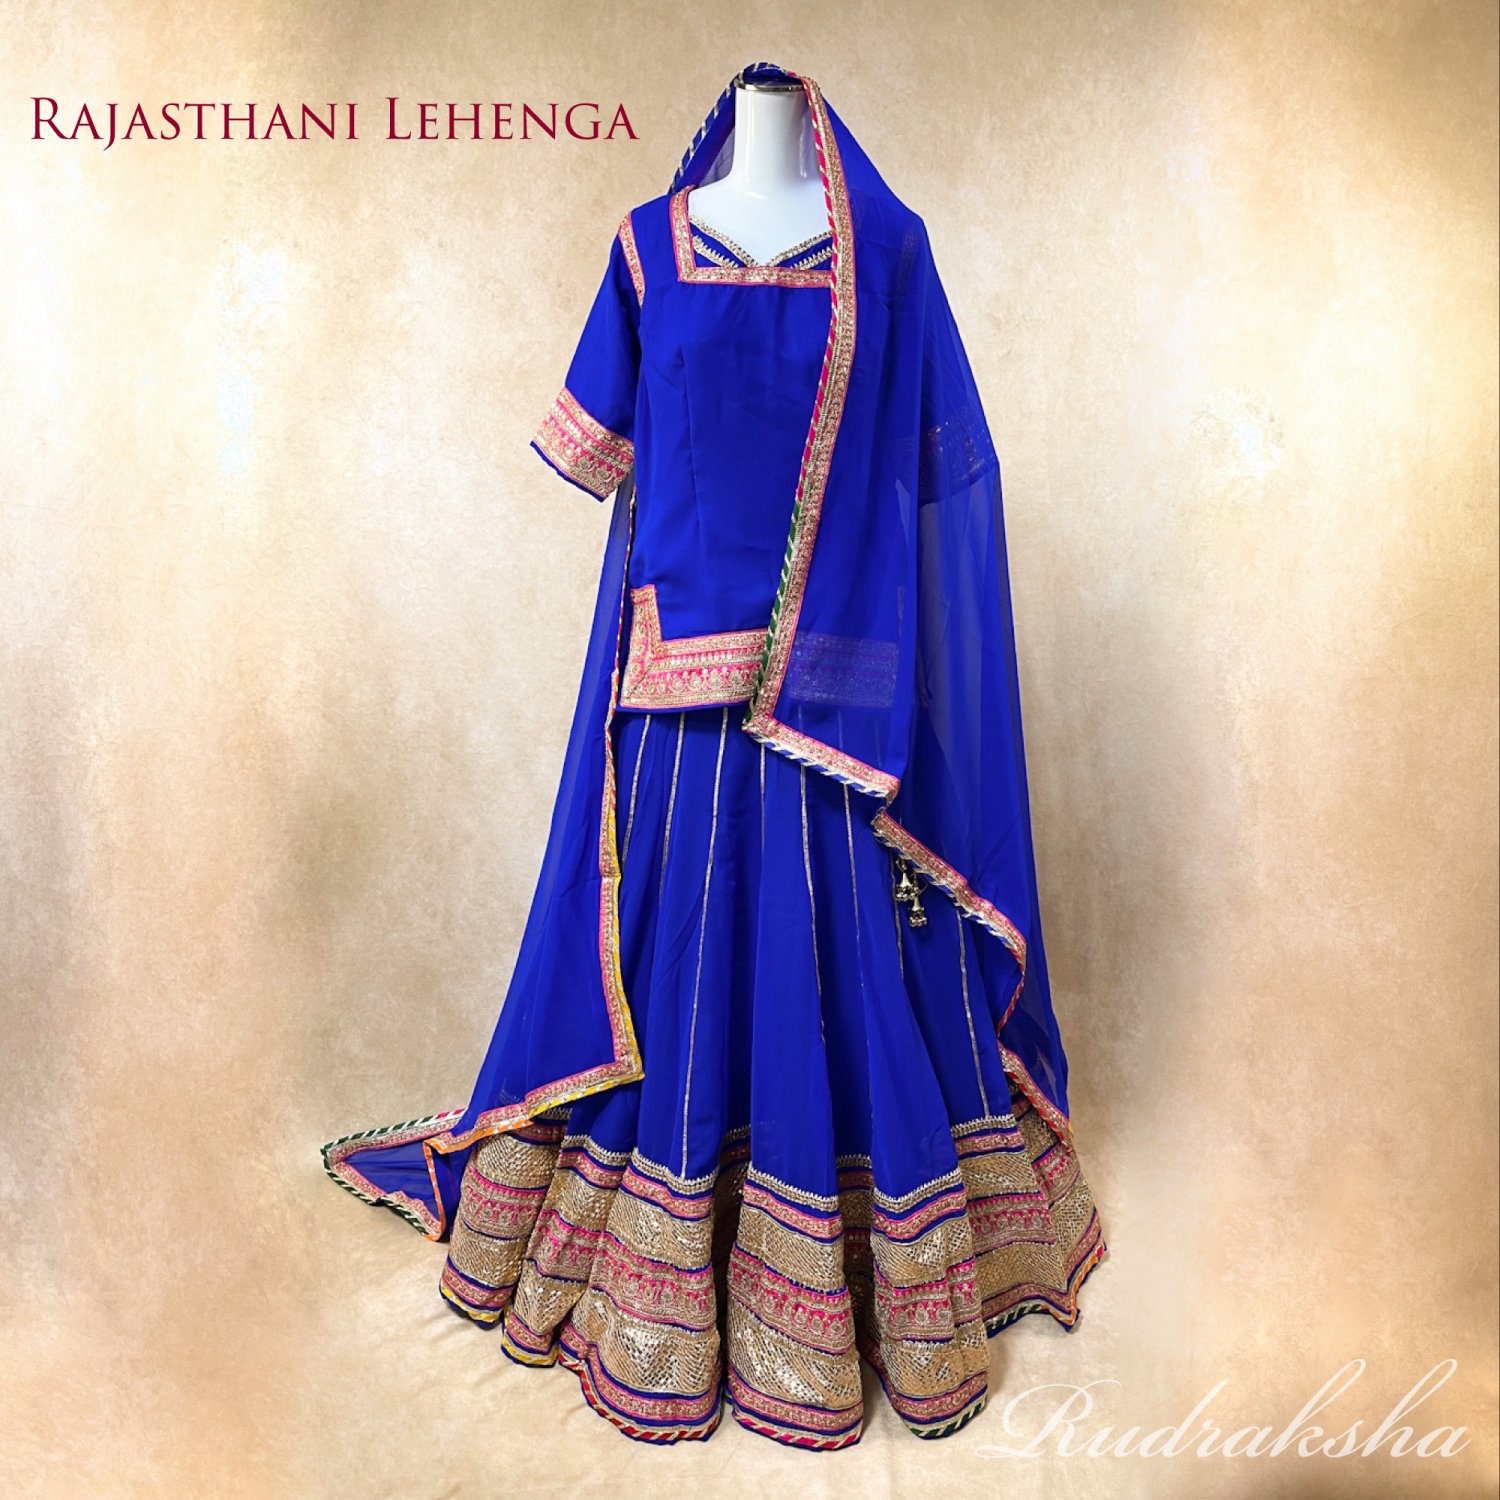 レヘンガ／Rajasthani Lehenga ラジャスタンstyle《ロイヤルブルーxゴールド》インド民族衣装ダンス衣装